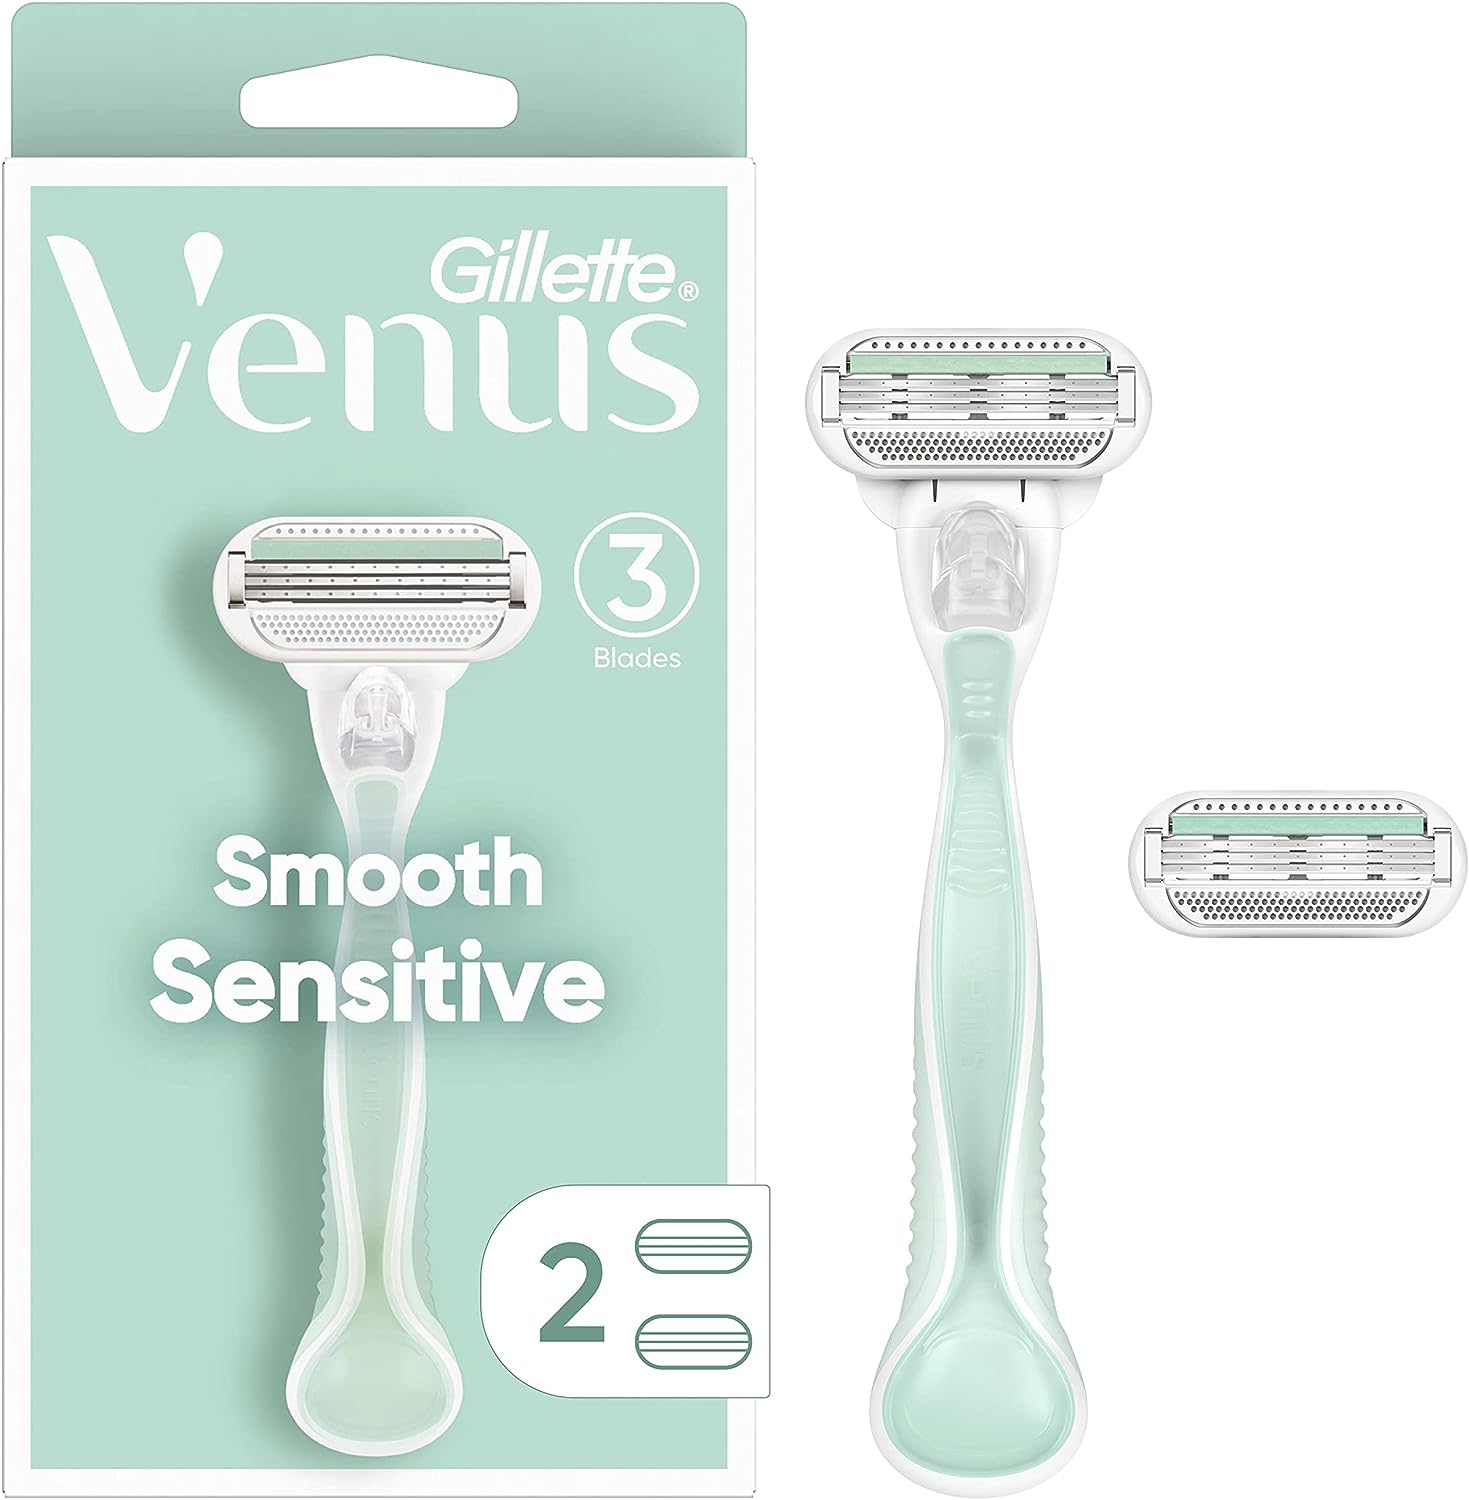 Venus Smooth Sensitive Handle 3Blades ,2 Head